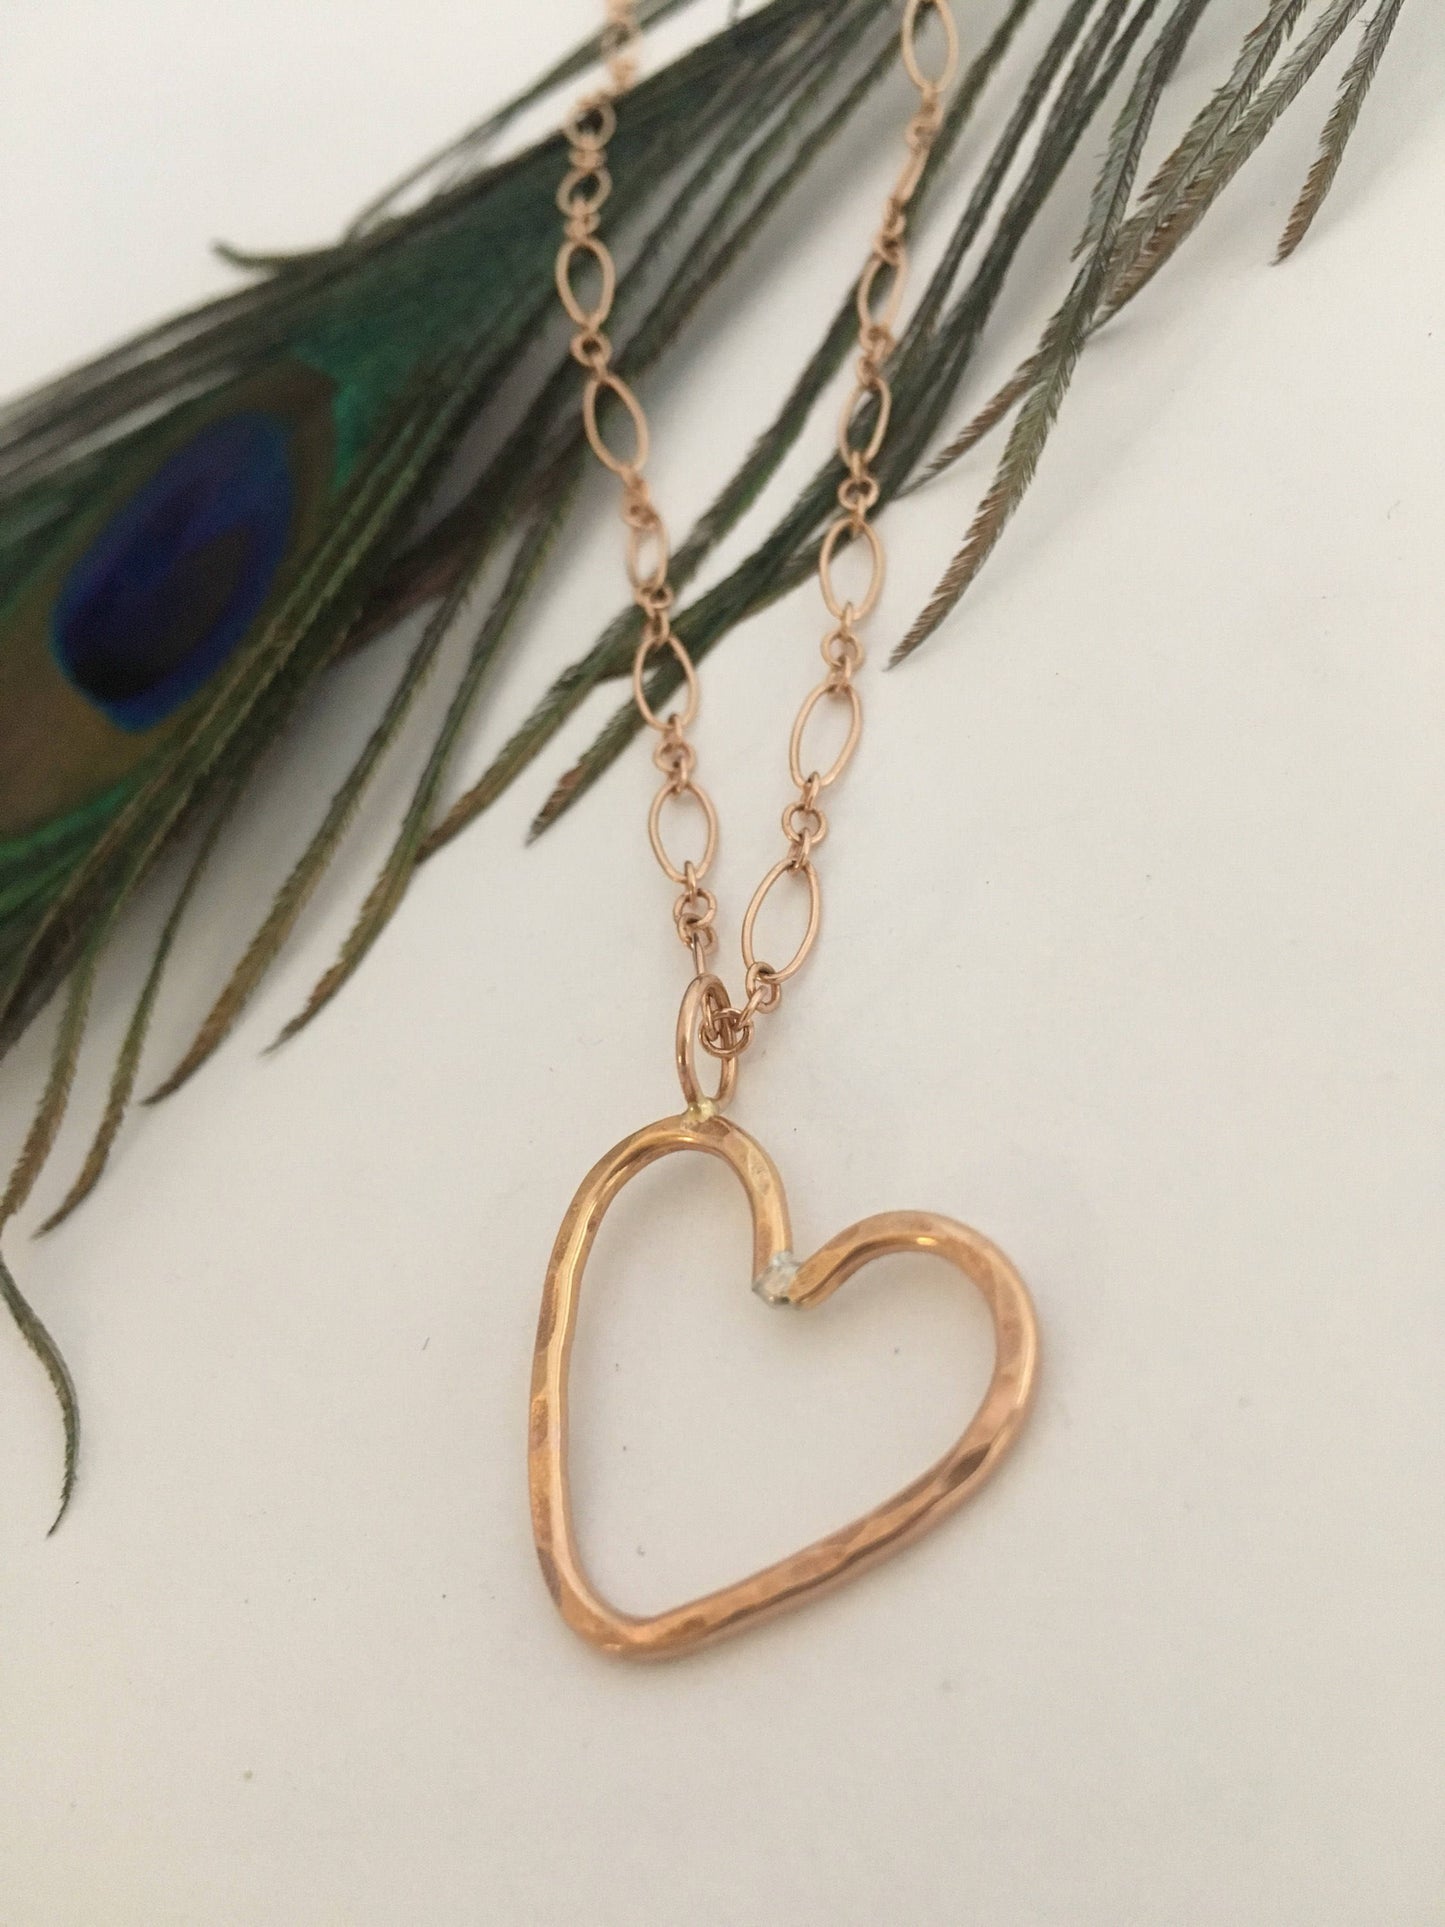 Bridal Heart Pendant Necklace 